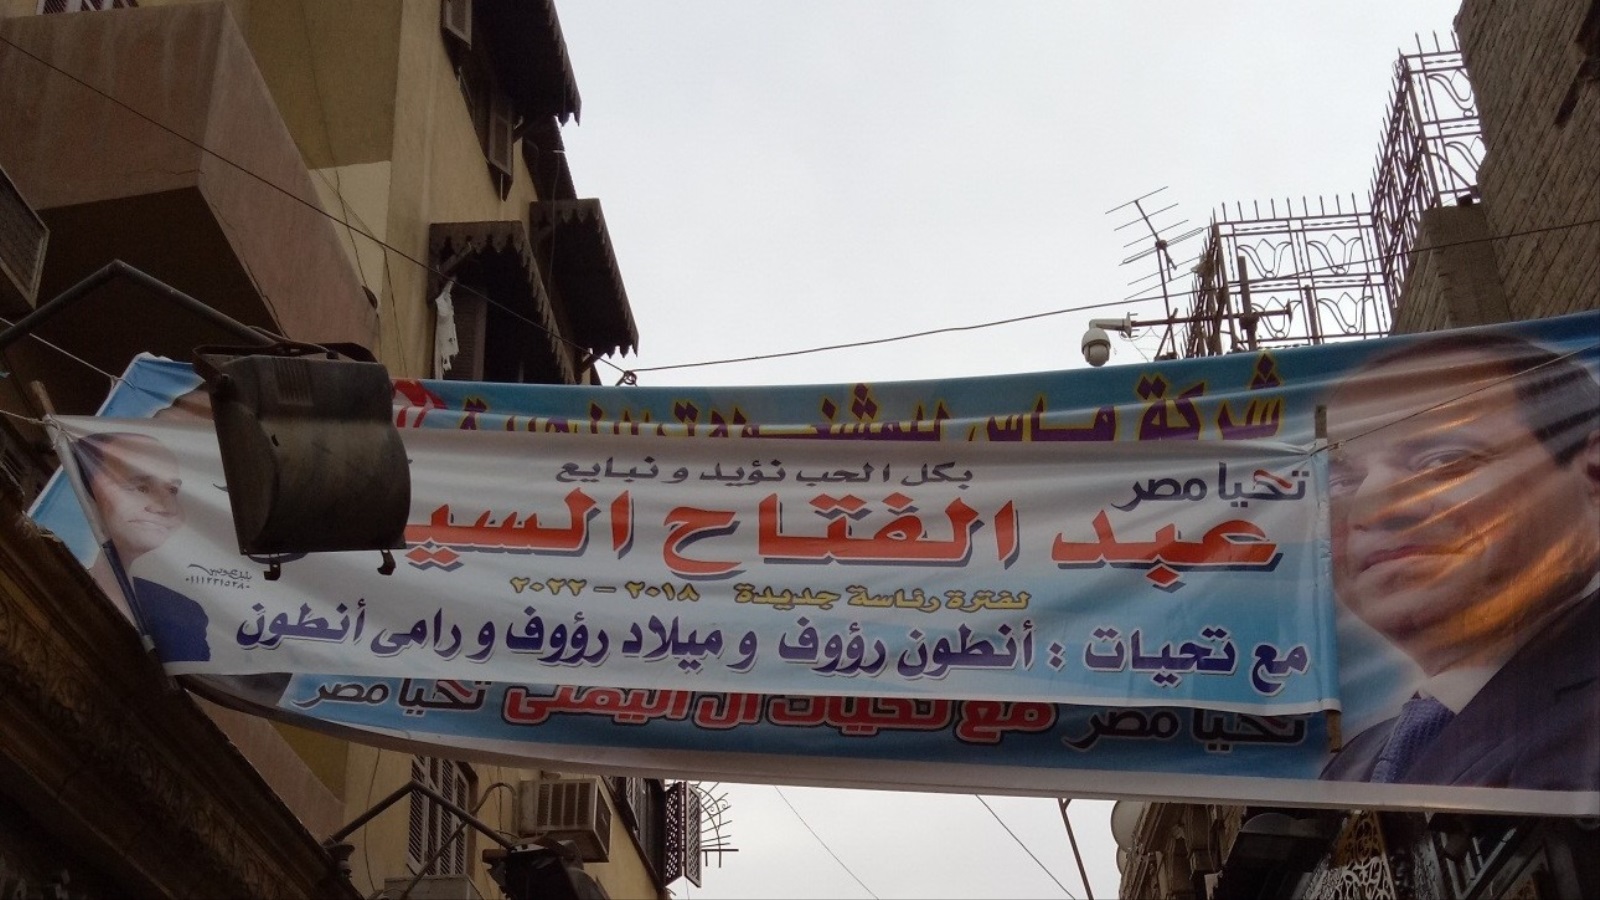 تقول اللافتات إذن أنّ ركائز الحكم القديمة تعود بقوة في مصر 2018 وأنّ 